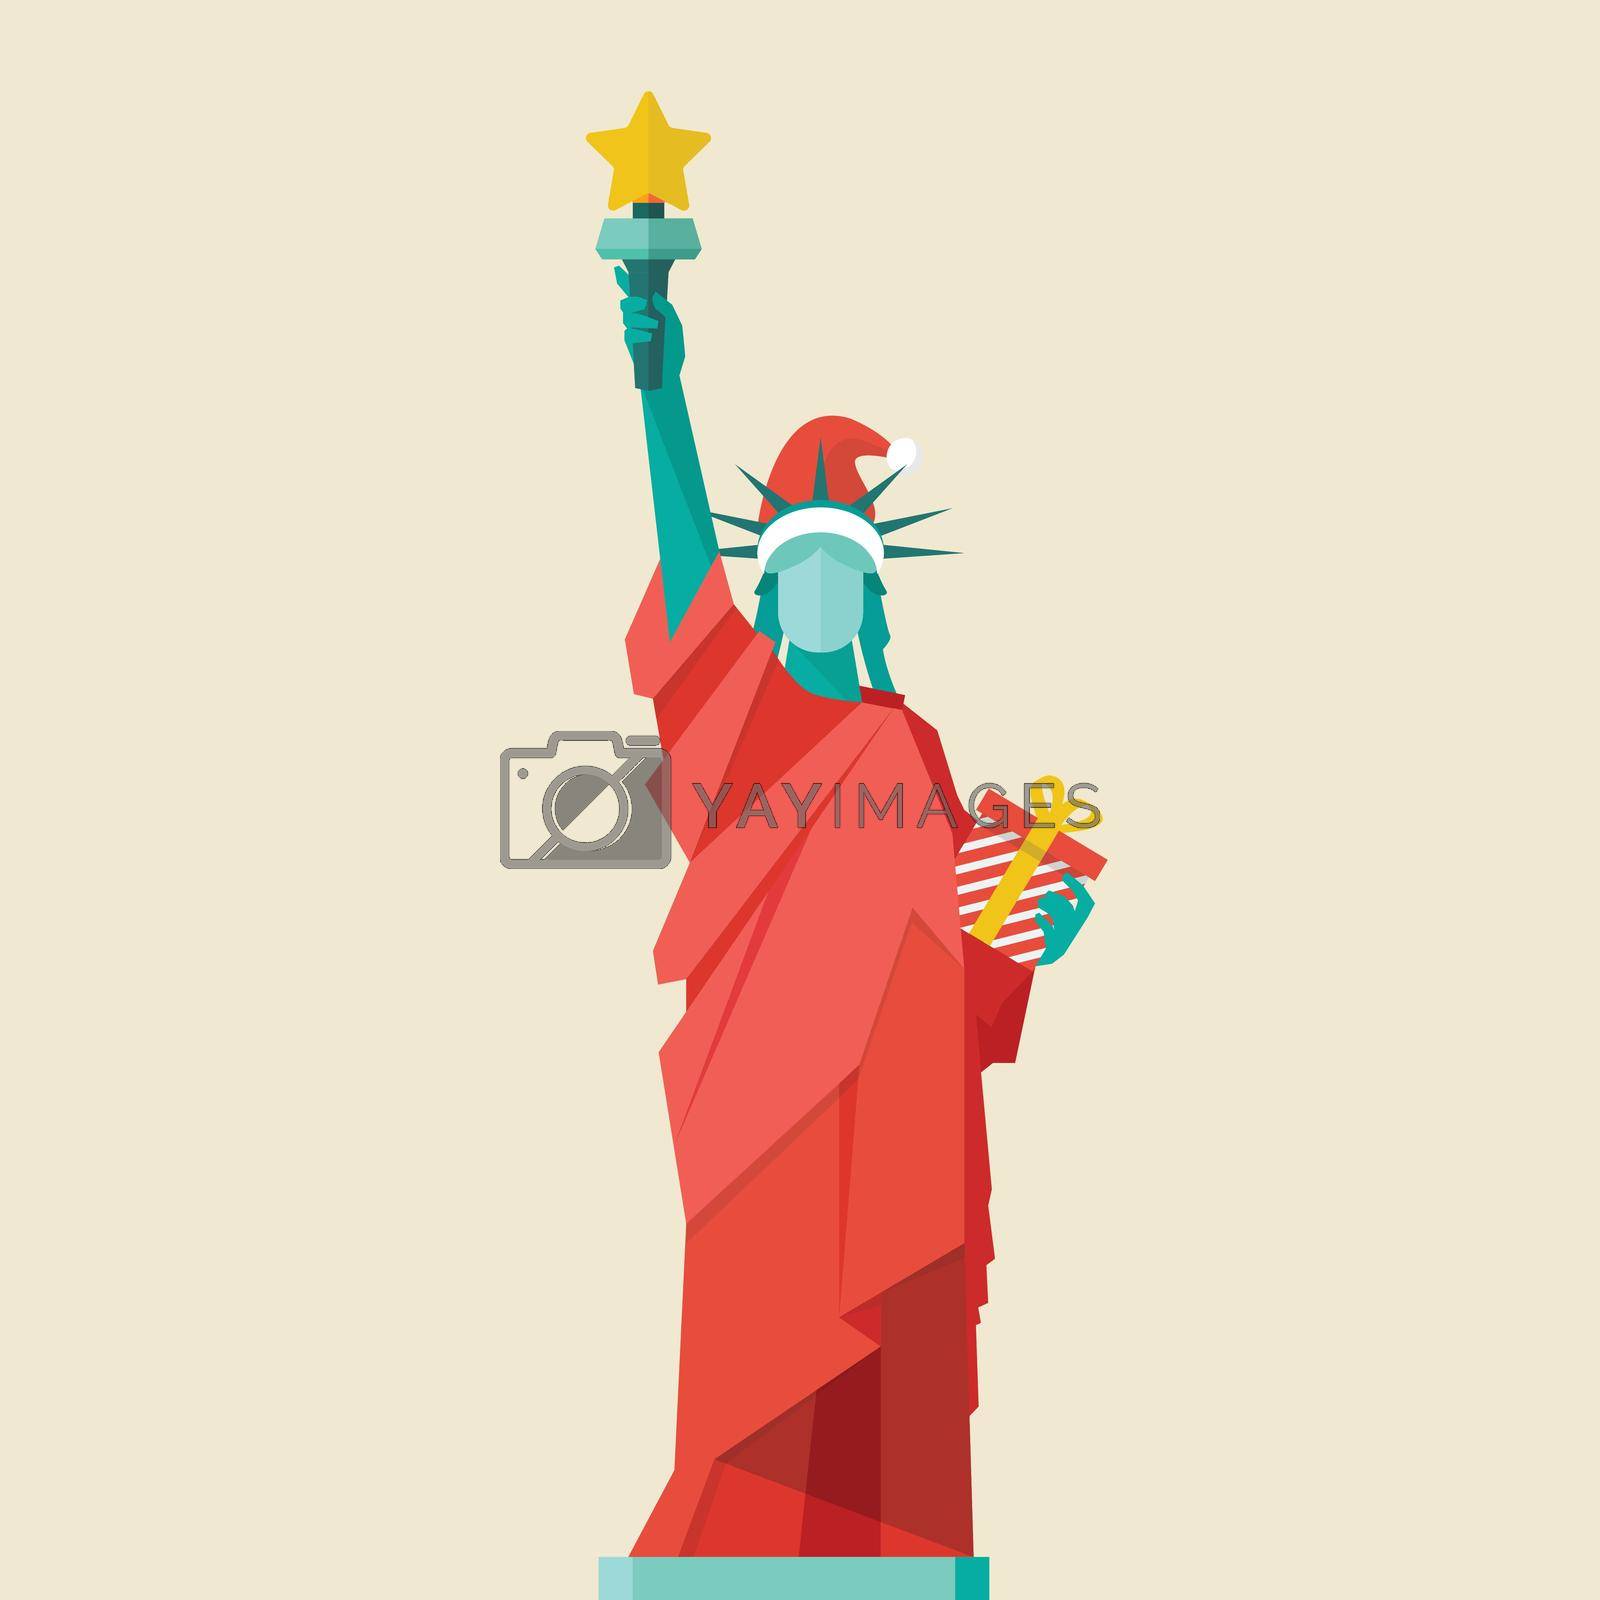 Royalty free image of Santa Statue of liberty by siraanamwong